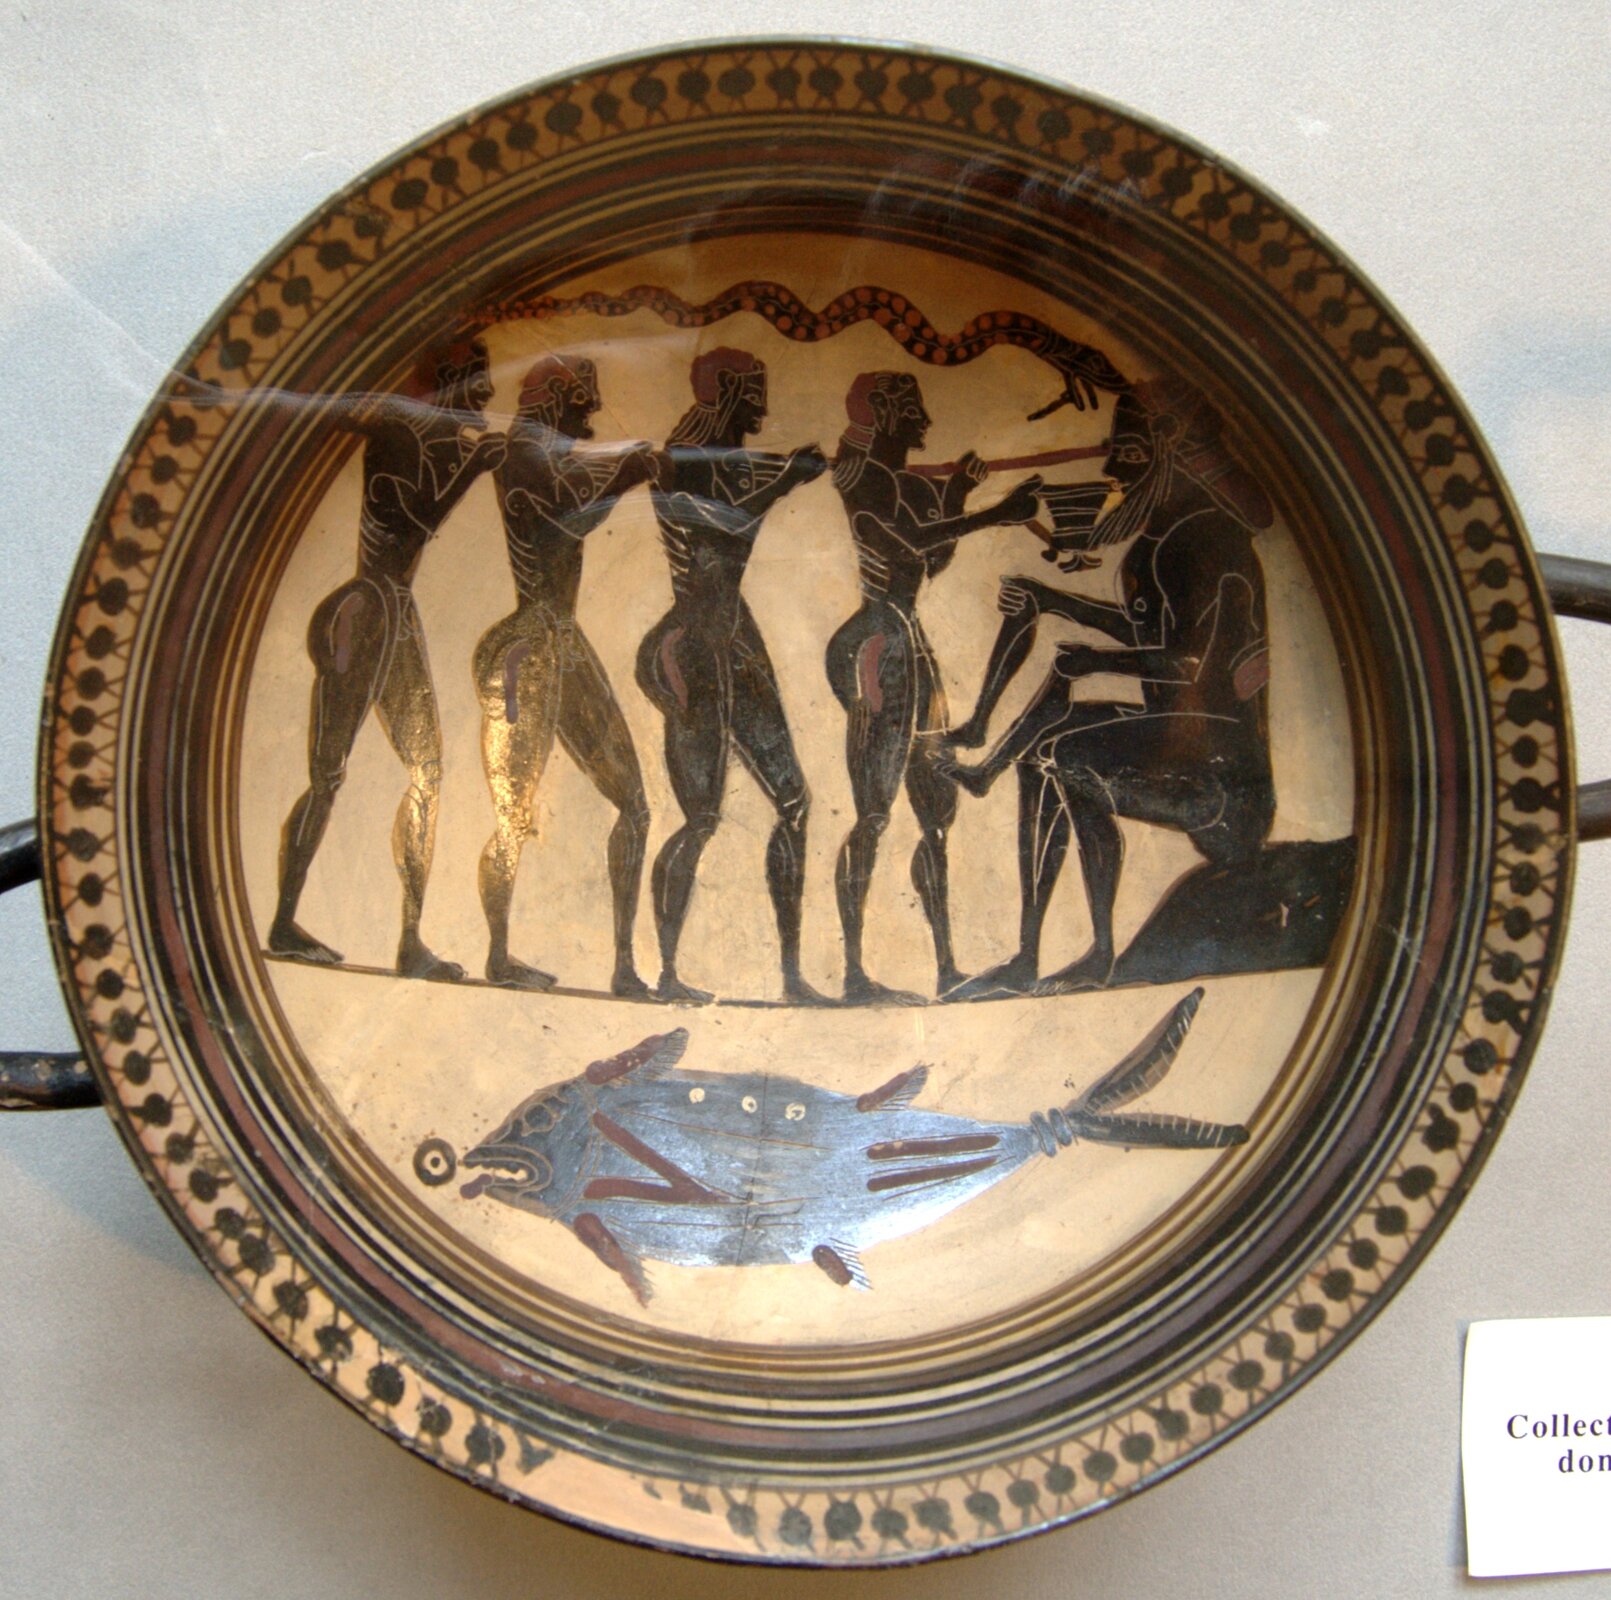 Odyseusz i jego towarzysze oślepiają Polifema Źródło: Autor nieznany, Odyseusz i jego towarzysze oślepiają Polifema, 565–560 r. p.n.e., Cabinet des Médailles, Paryż, domena publiczna.